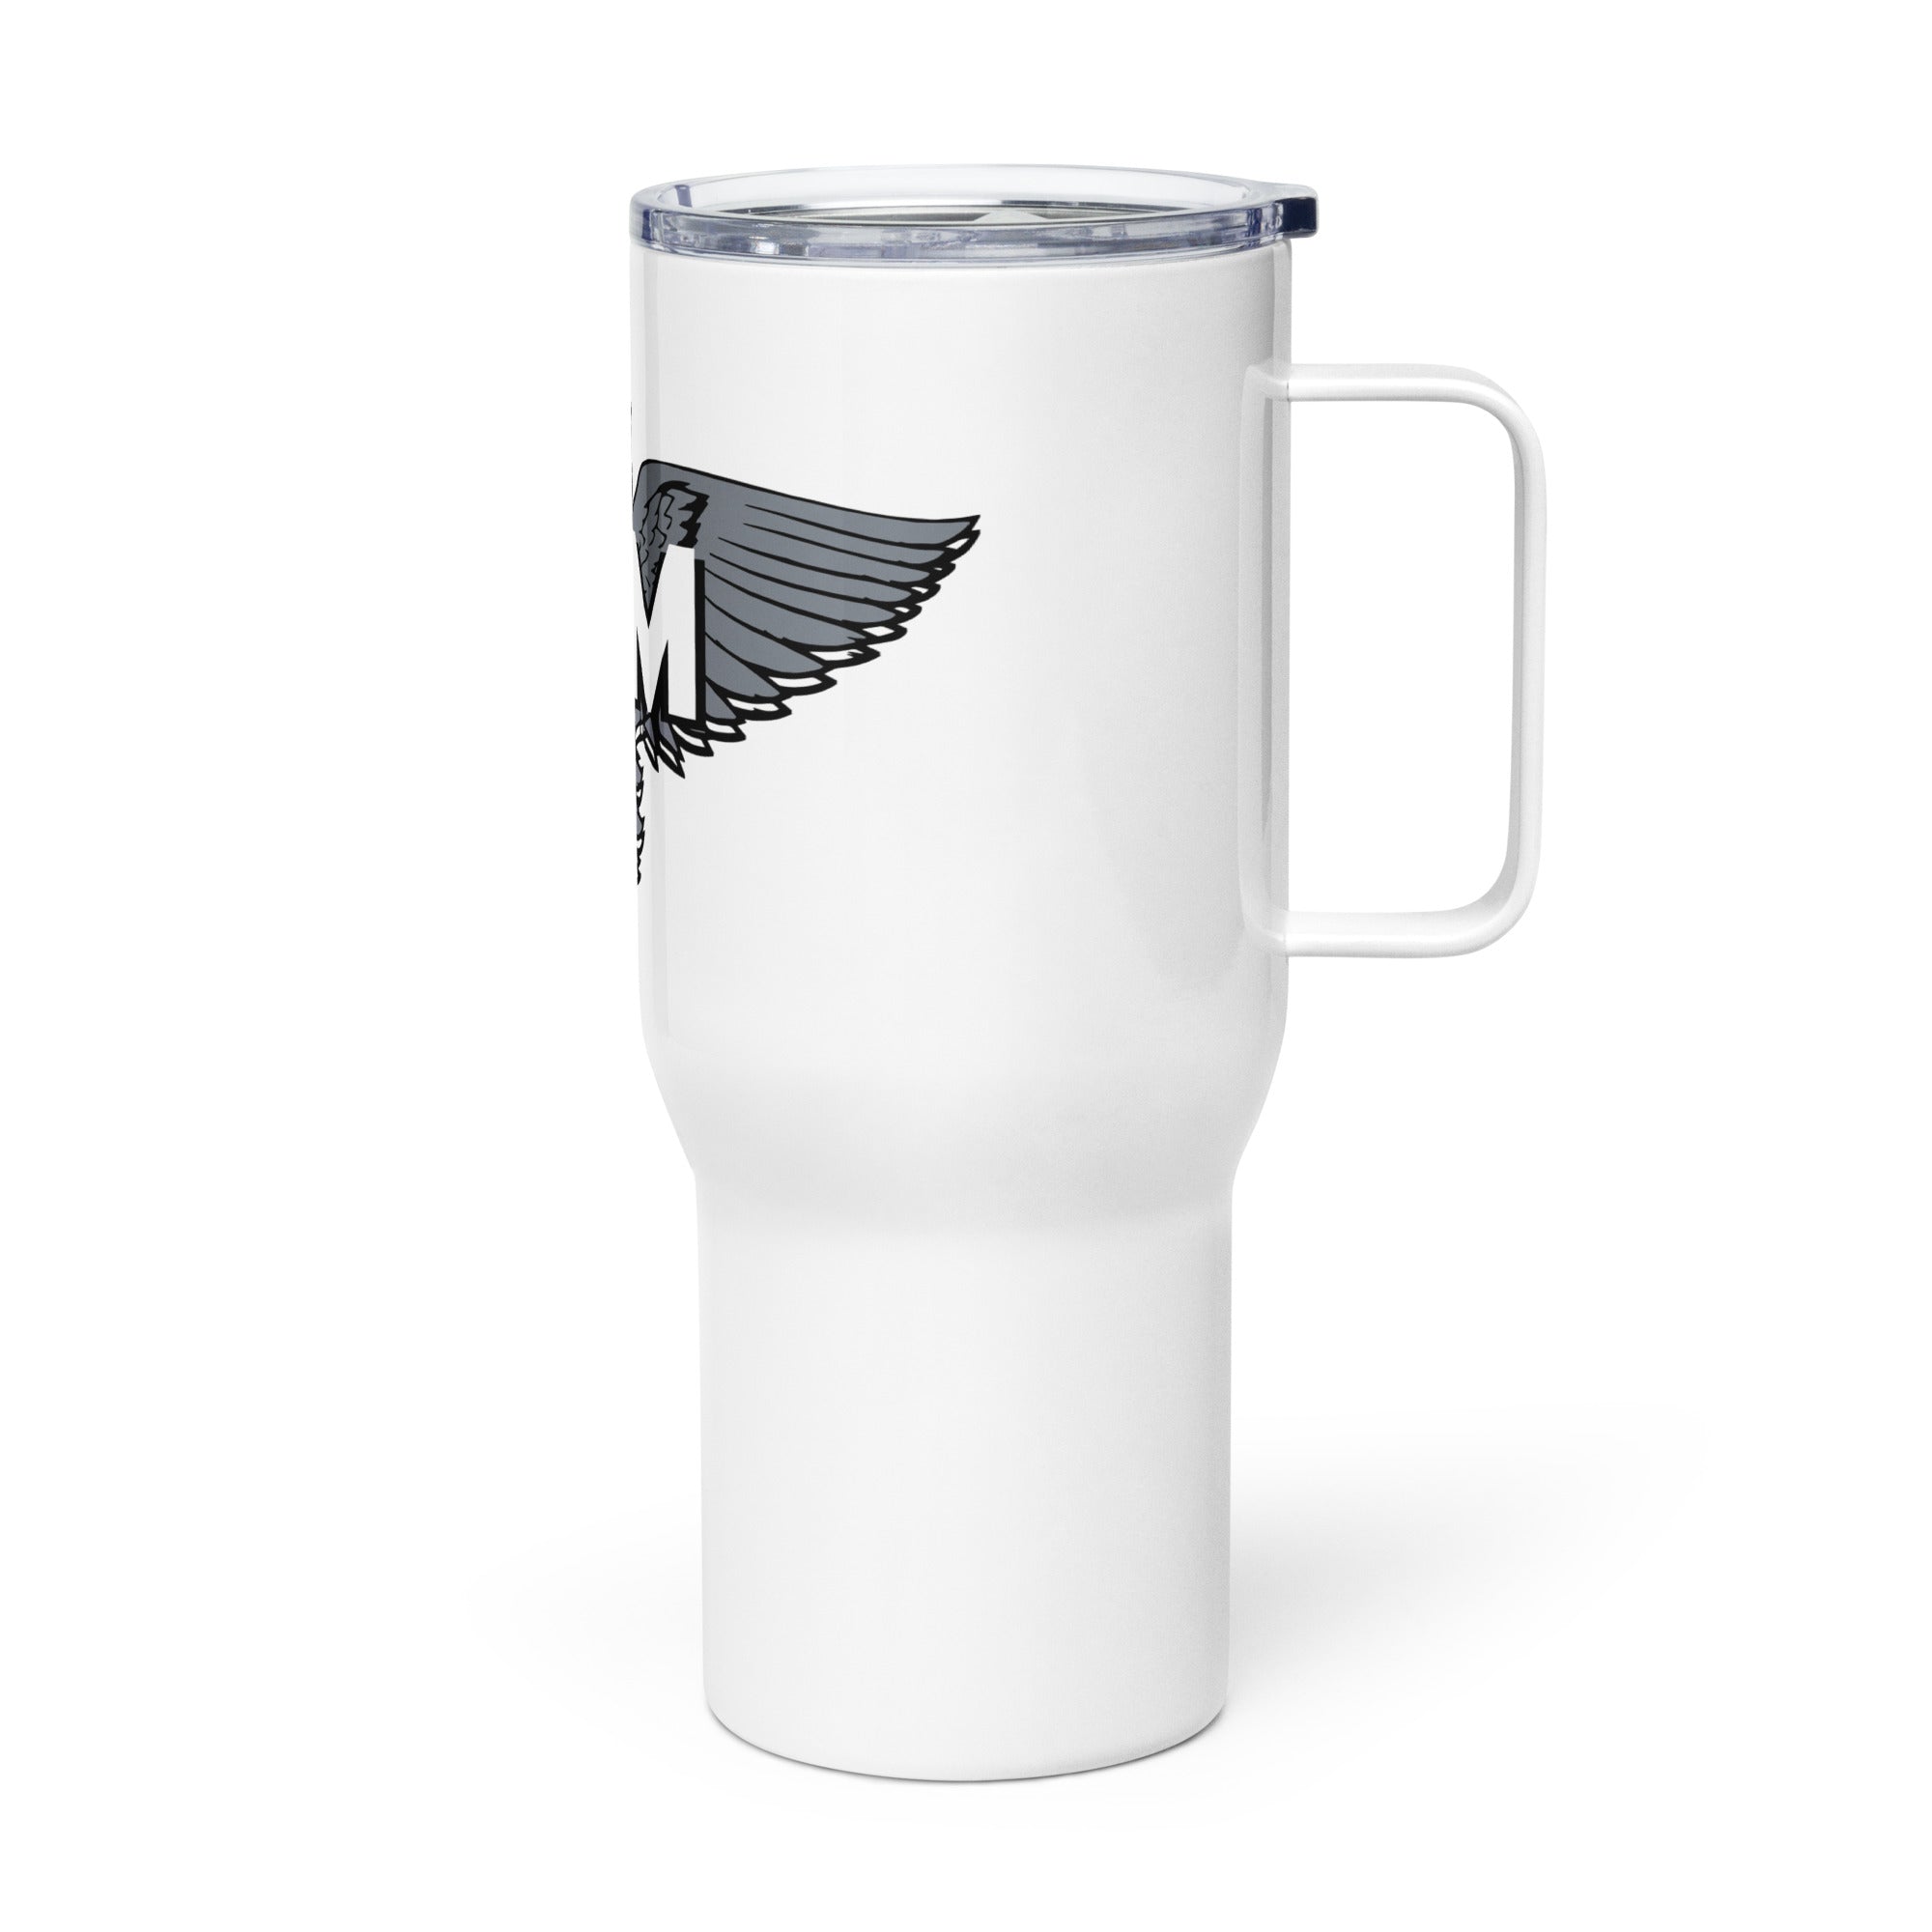 SKM Travel mug with a handle